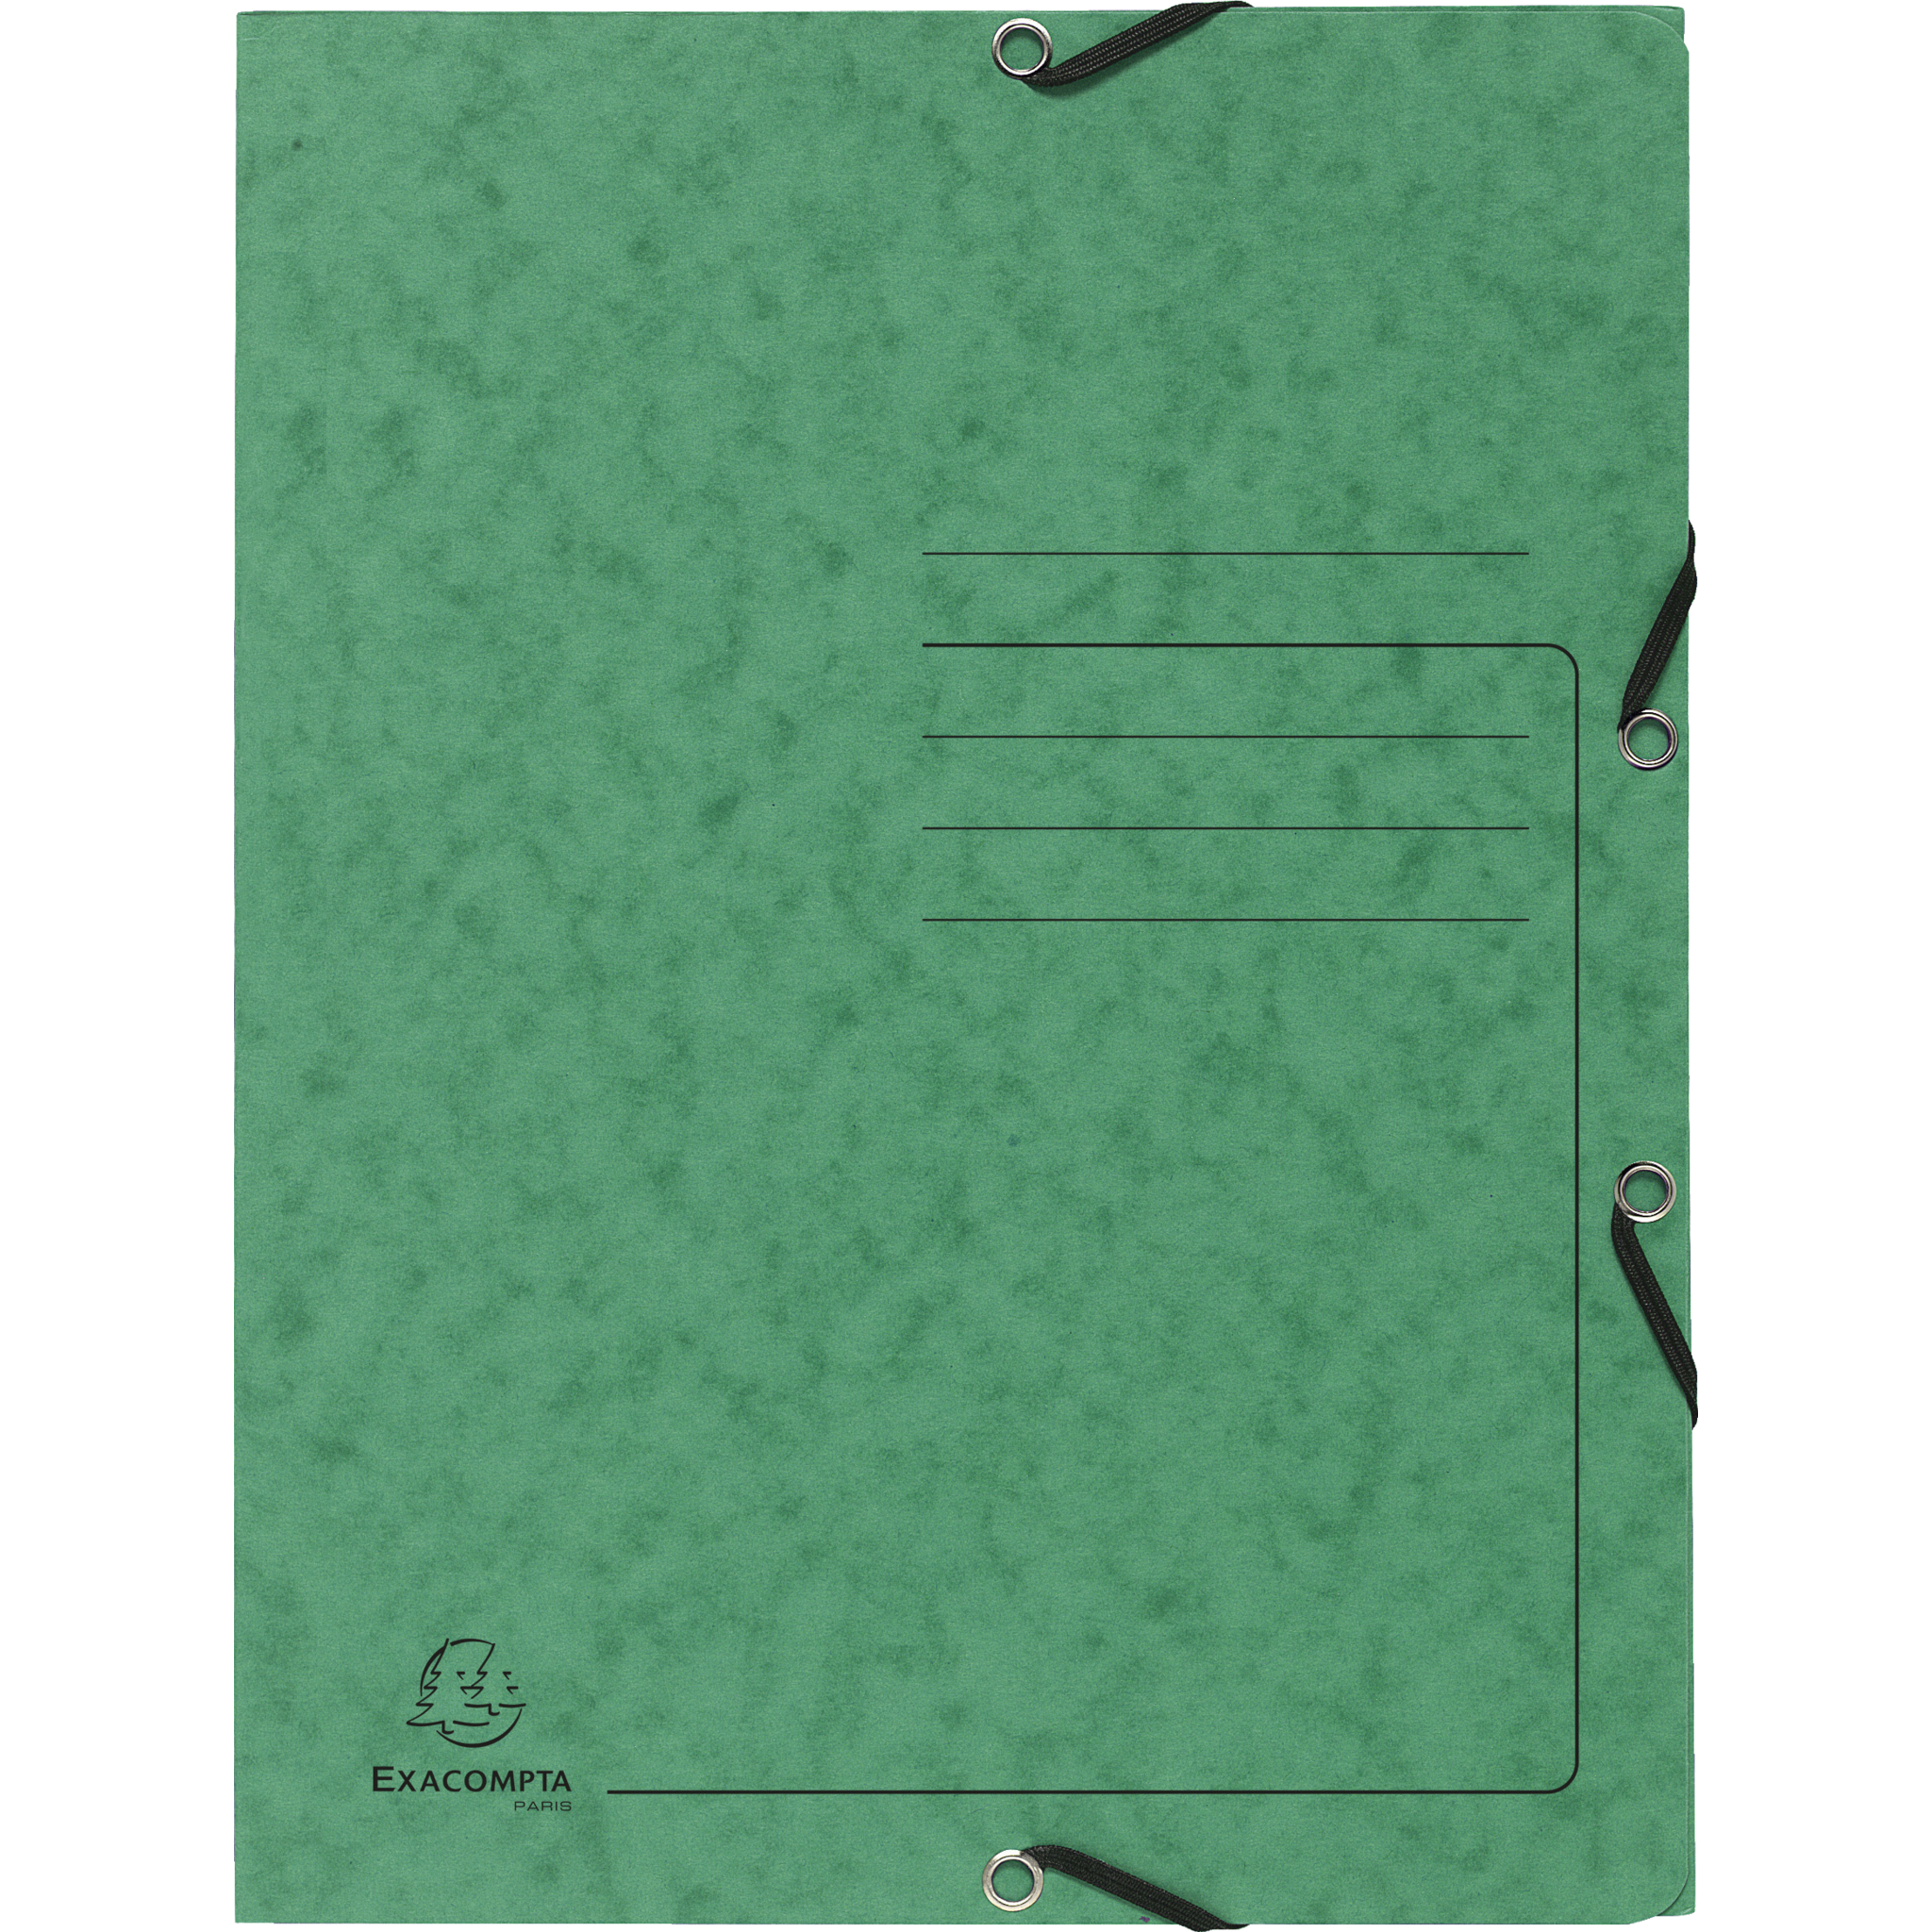 EXACOMPTA Sammelmappe mit Gummizug und 3 Klappen aus Colorspan-Karton 355g/m2 - A4 - Grün